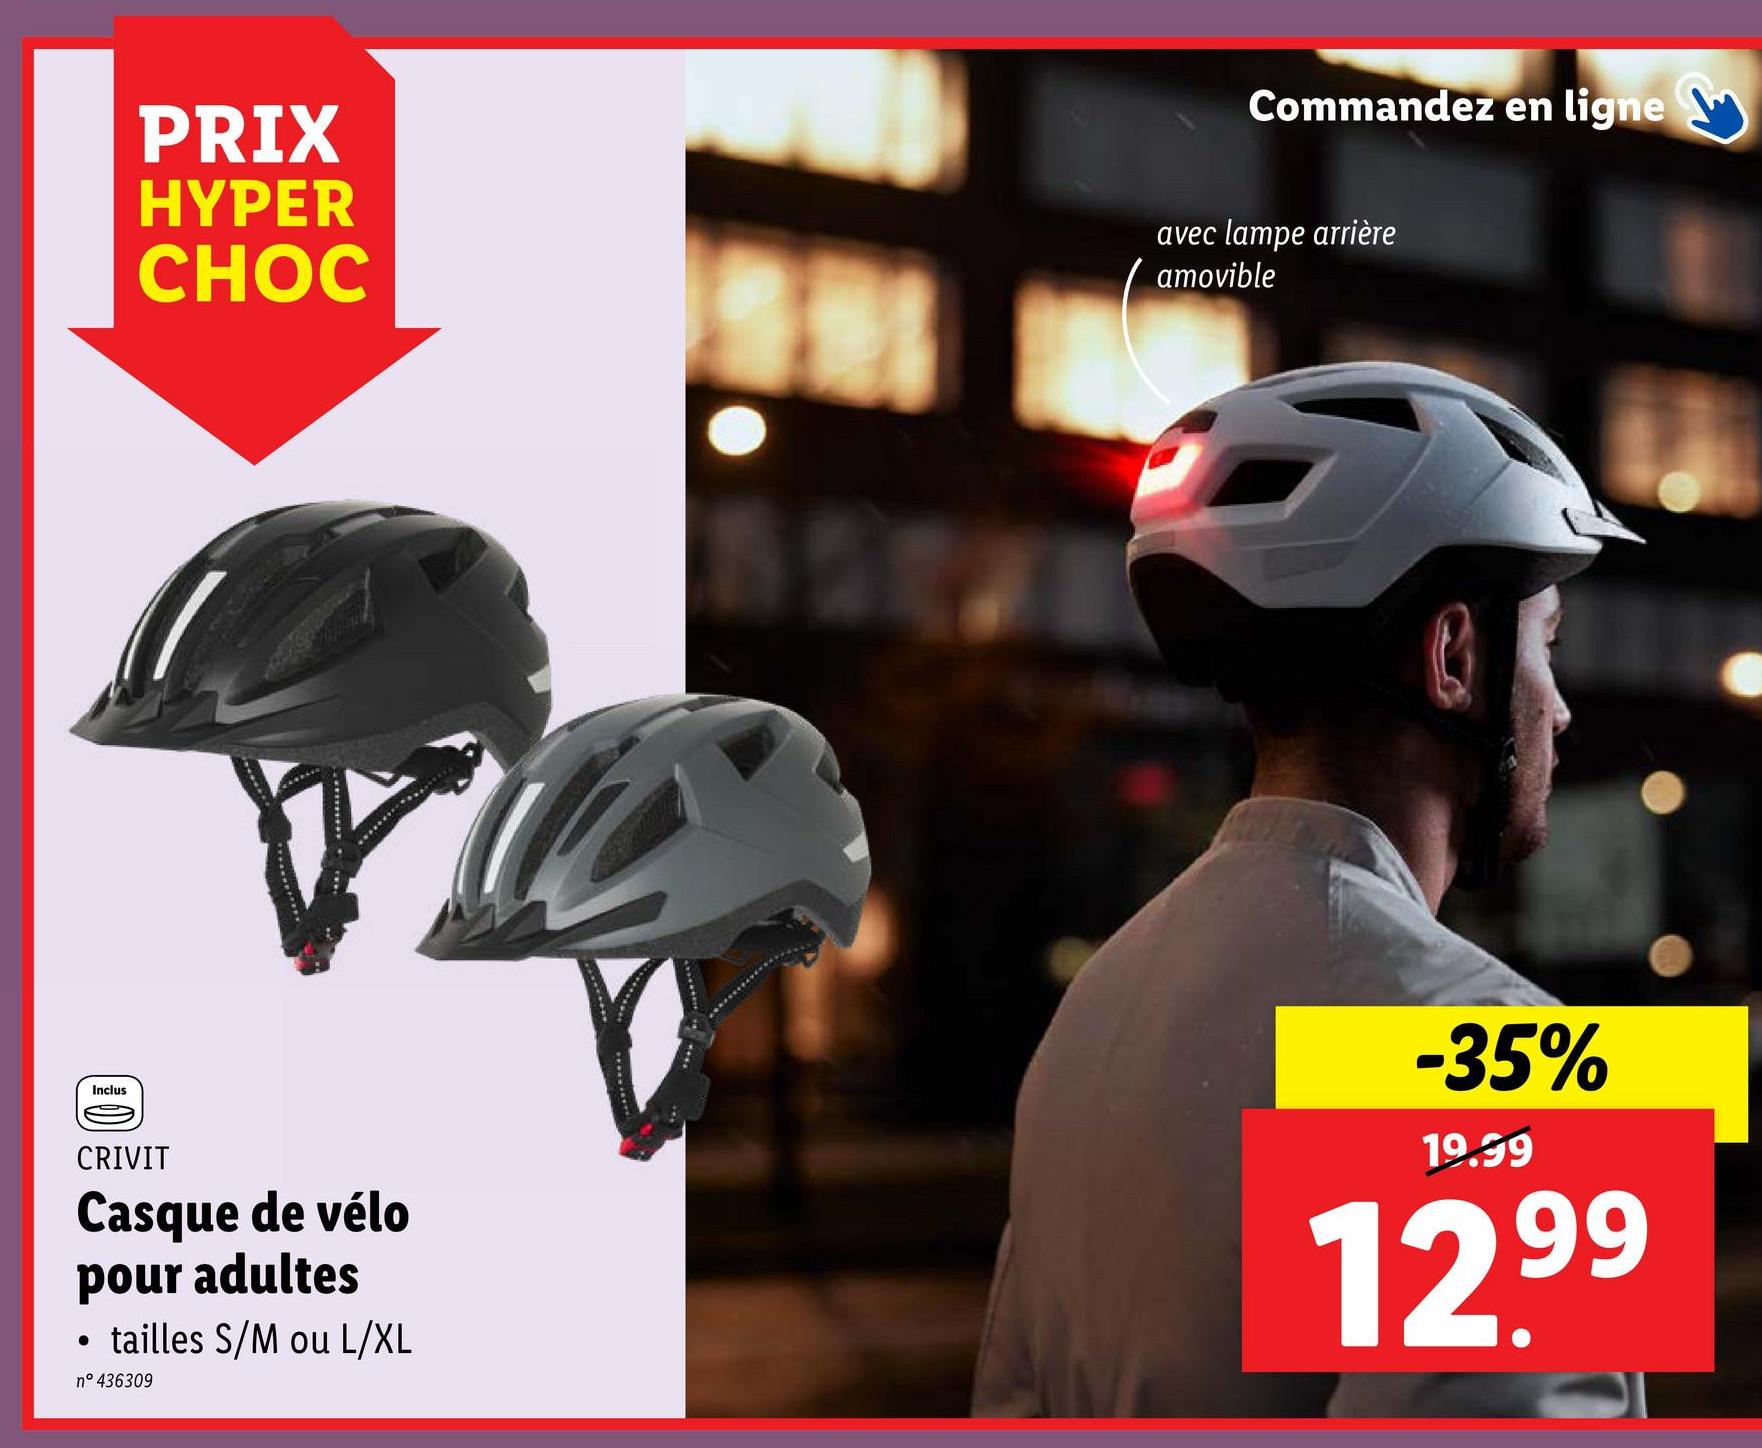 PRIX
HYPER
CHOC
Commandez en ligne
avec lampe arrière
amovible
Inclus
CRIVIT
Casque de vélo
pour adultes
●
tailles S/M ou L/XL
n° 436309
-35%
19.99
12.99